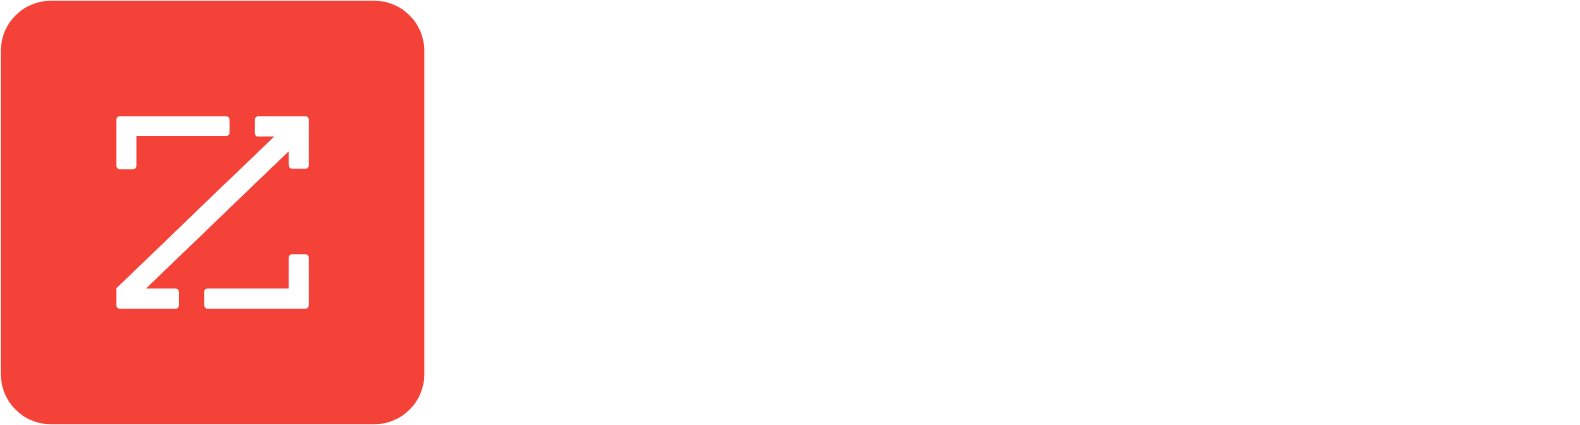 ZoomInfo Logo groß für dunkle Hintergründe (transparentes PNG)